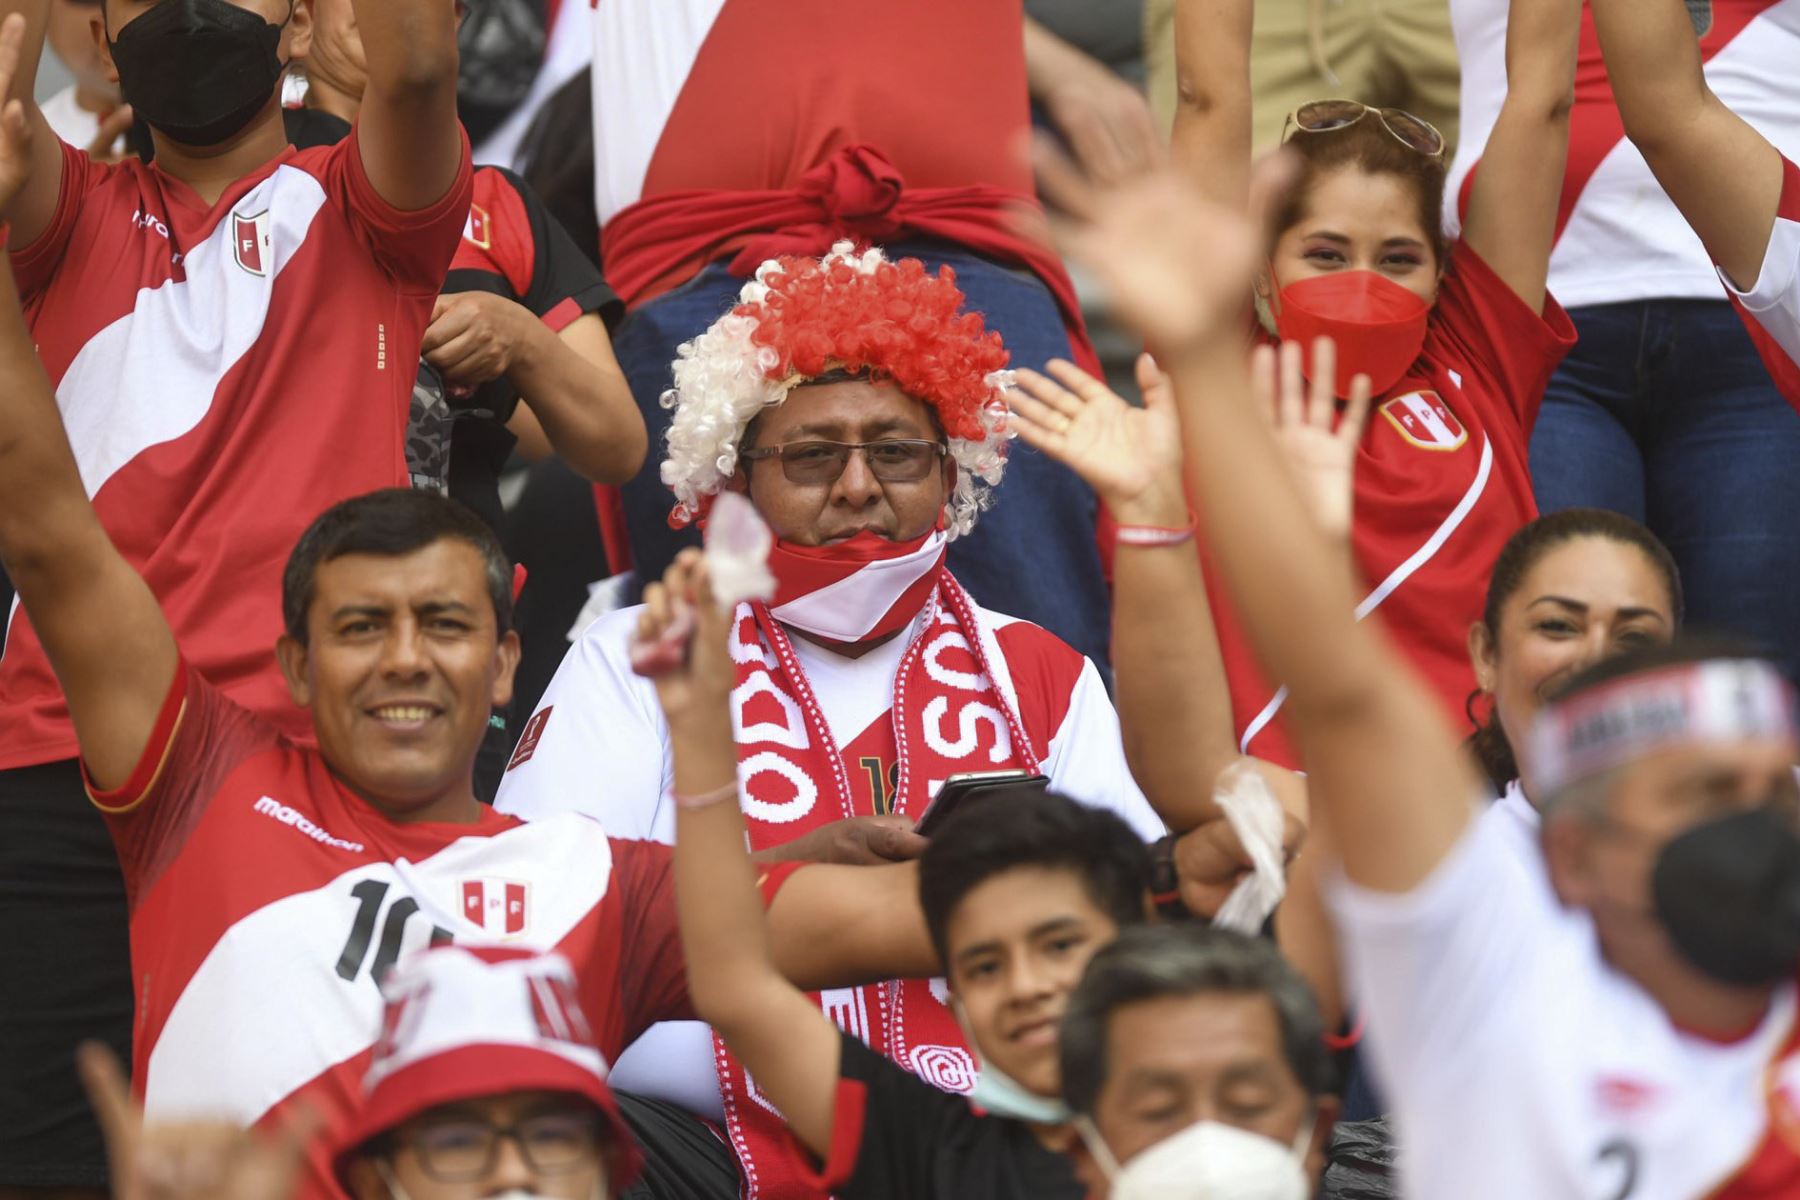 Selección peruana: piden a hinchas usar mascarillas para alentar en lugares aglomerados